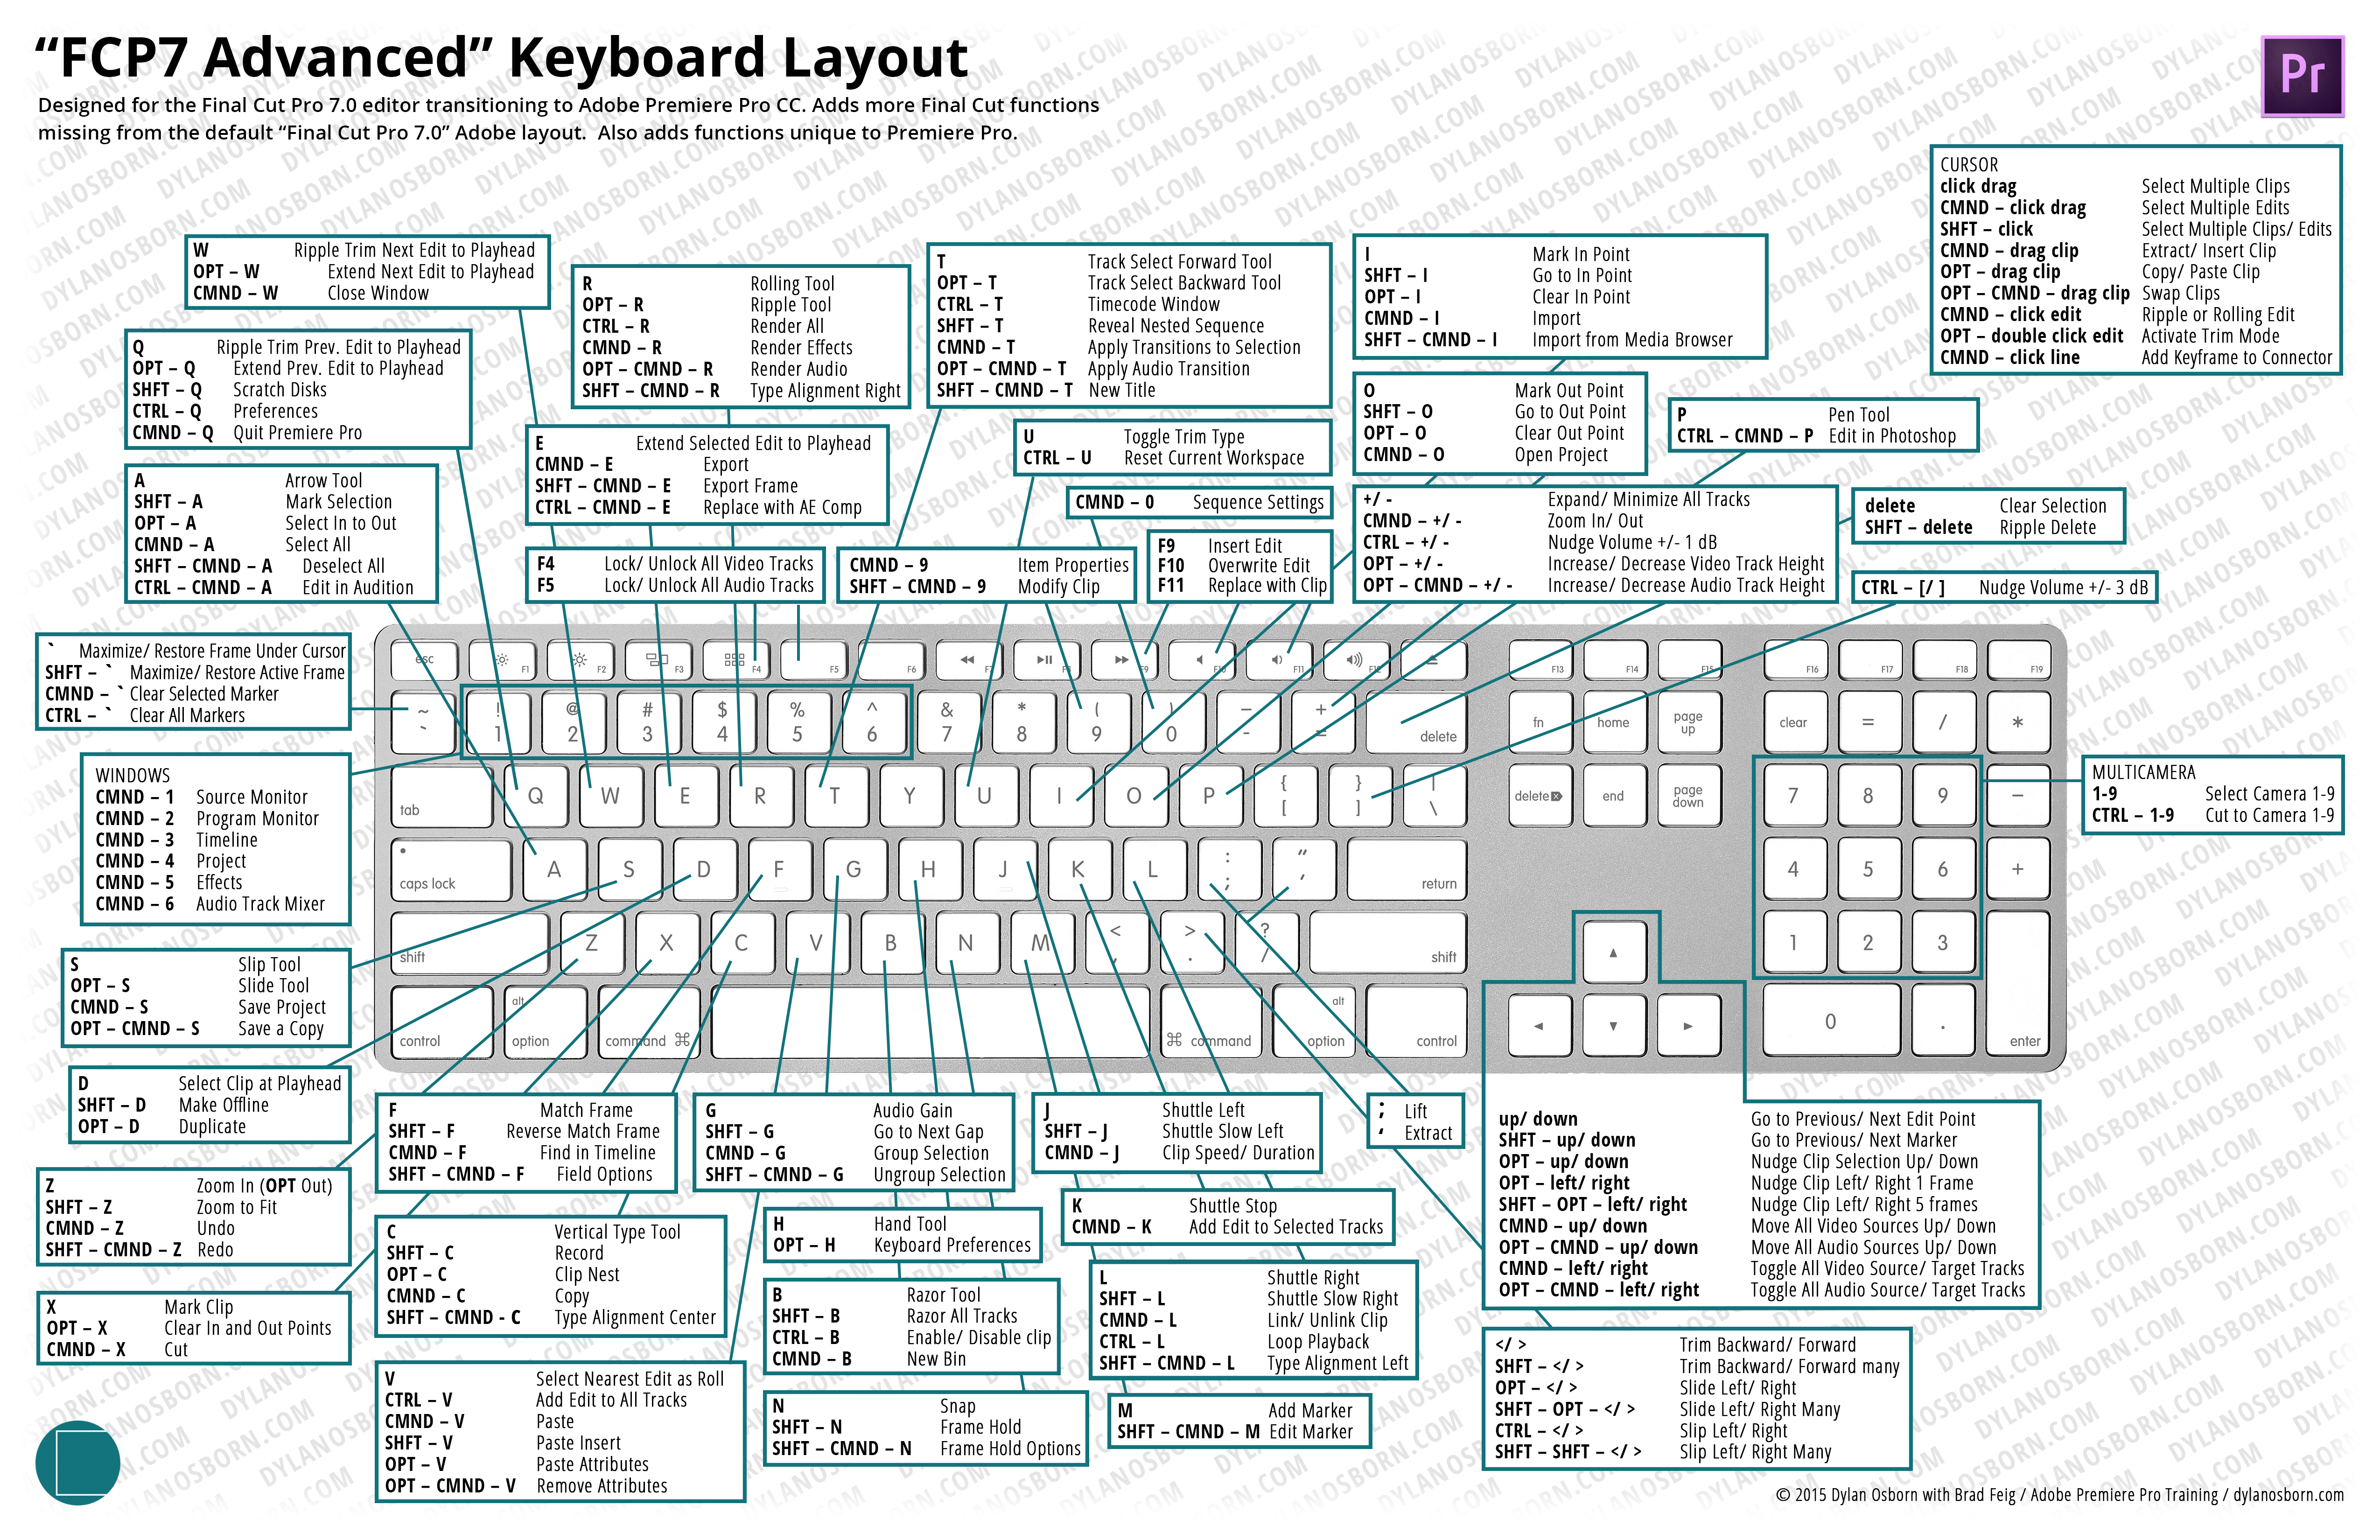 “FCP7 Advanced” Keyboard Layout | Dylan Osborn